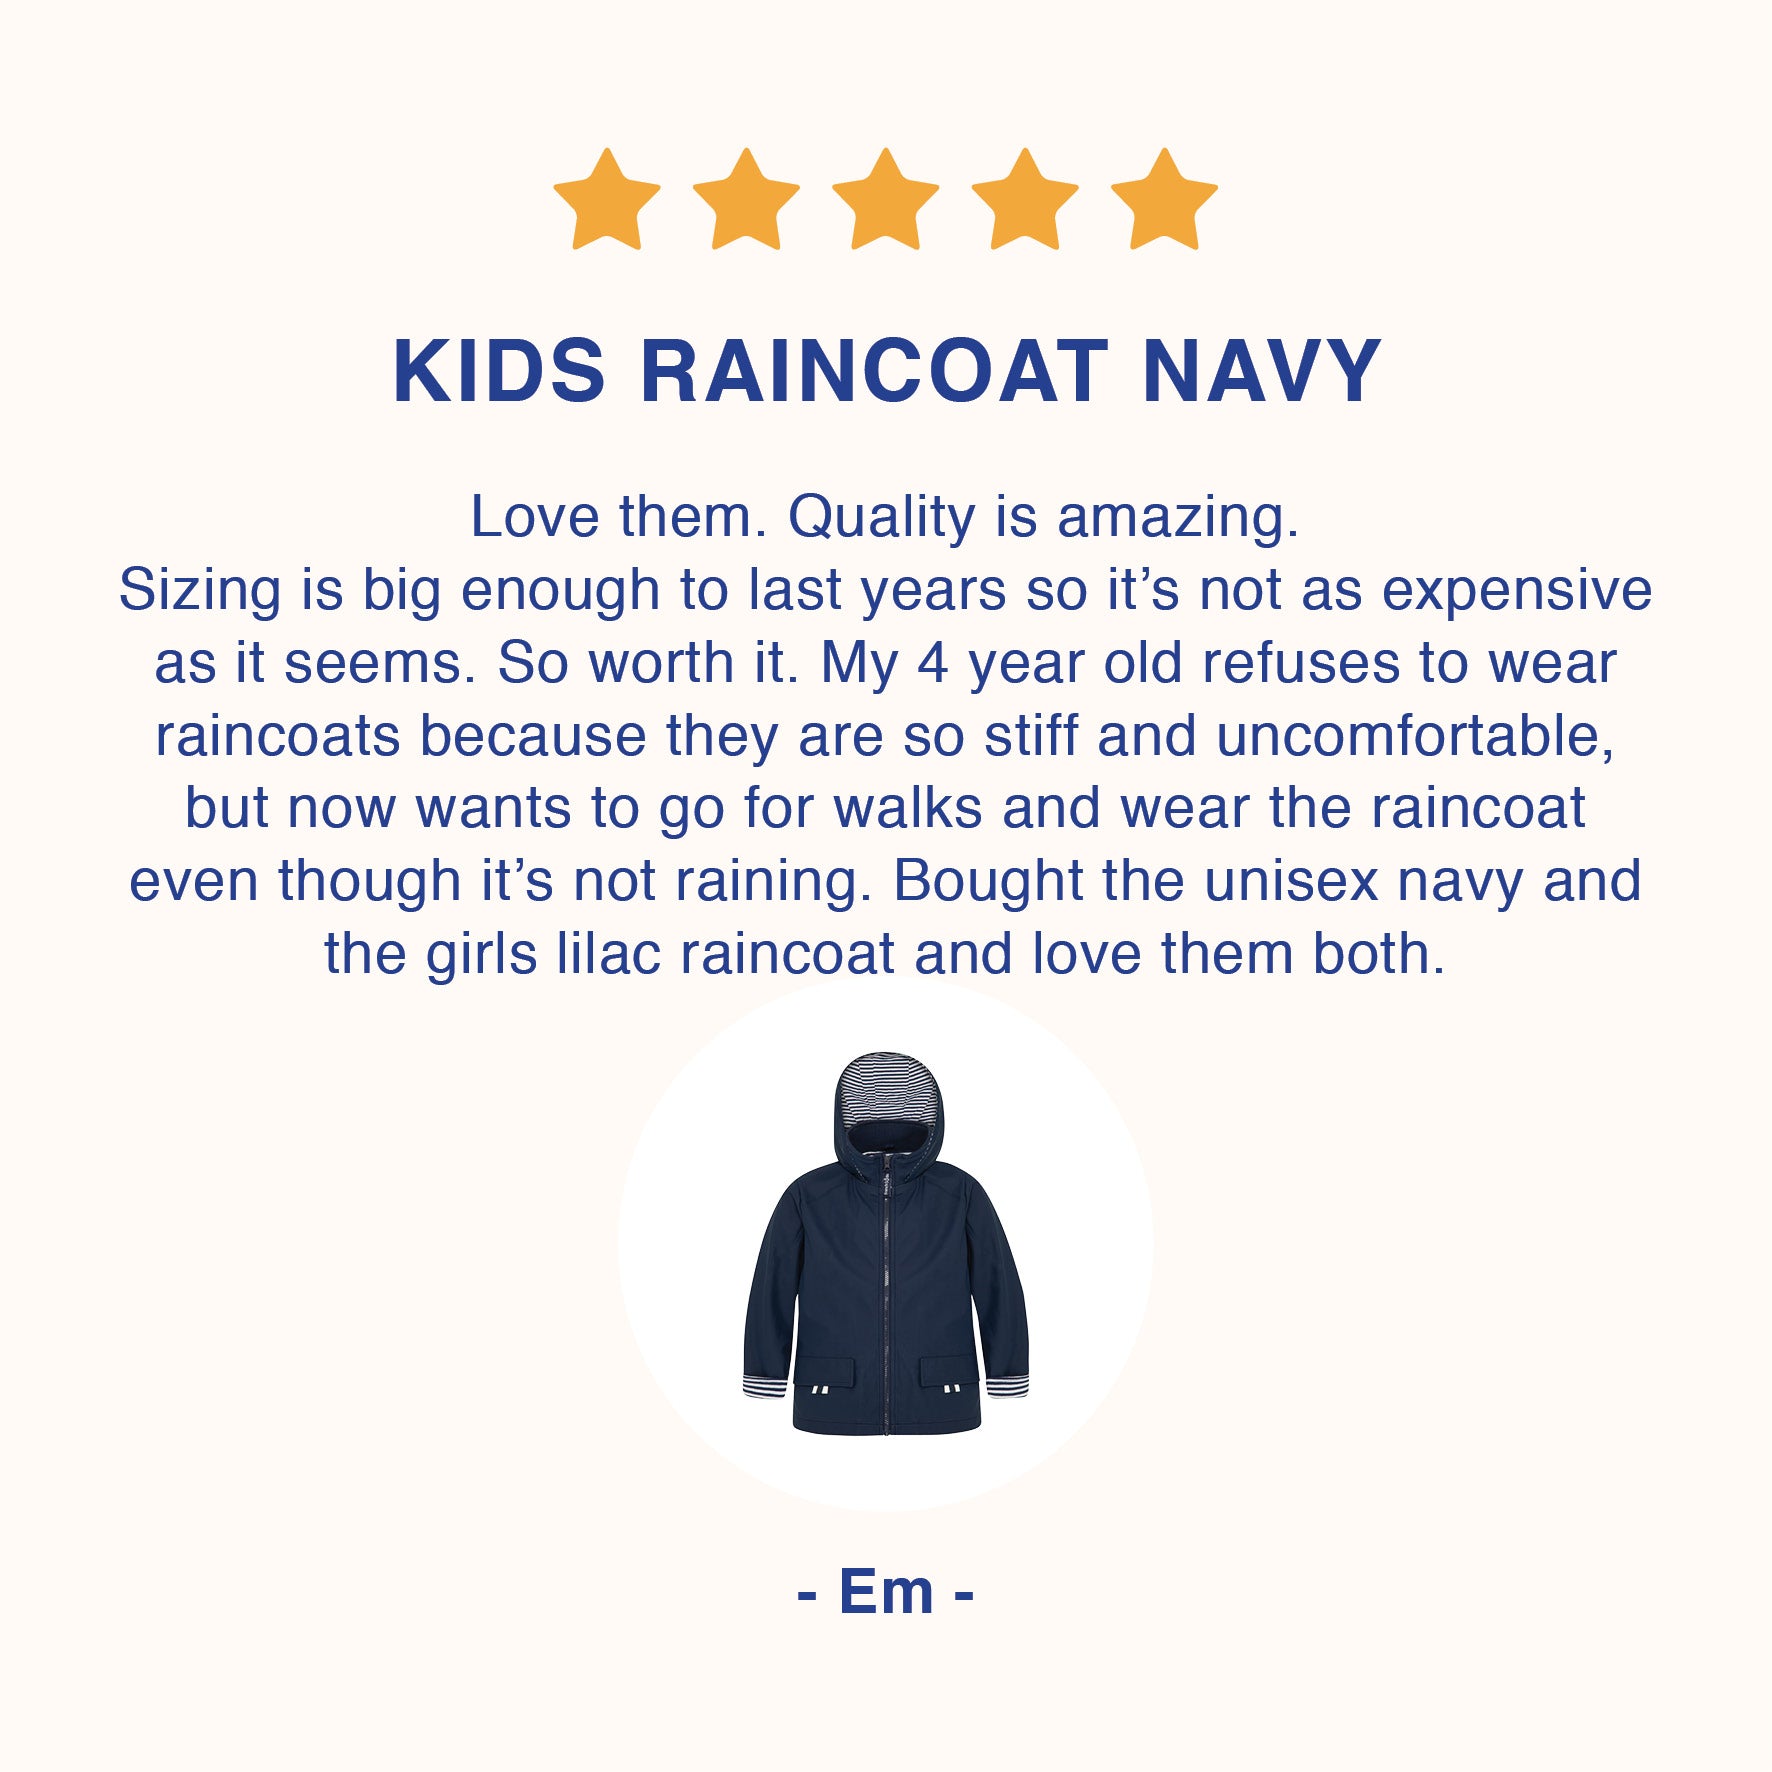 Kids raincoat customer review